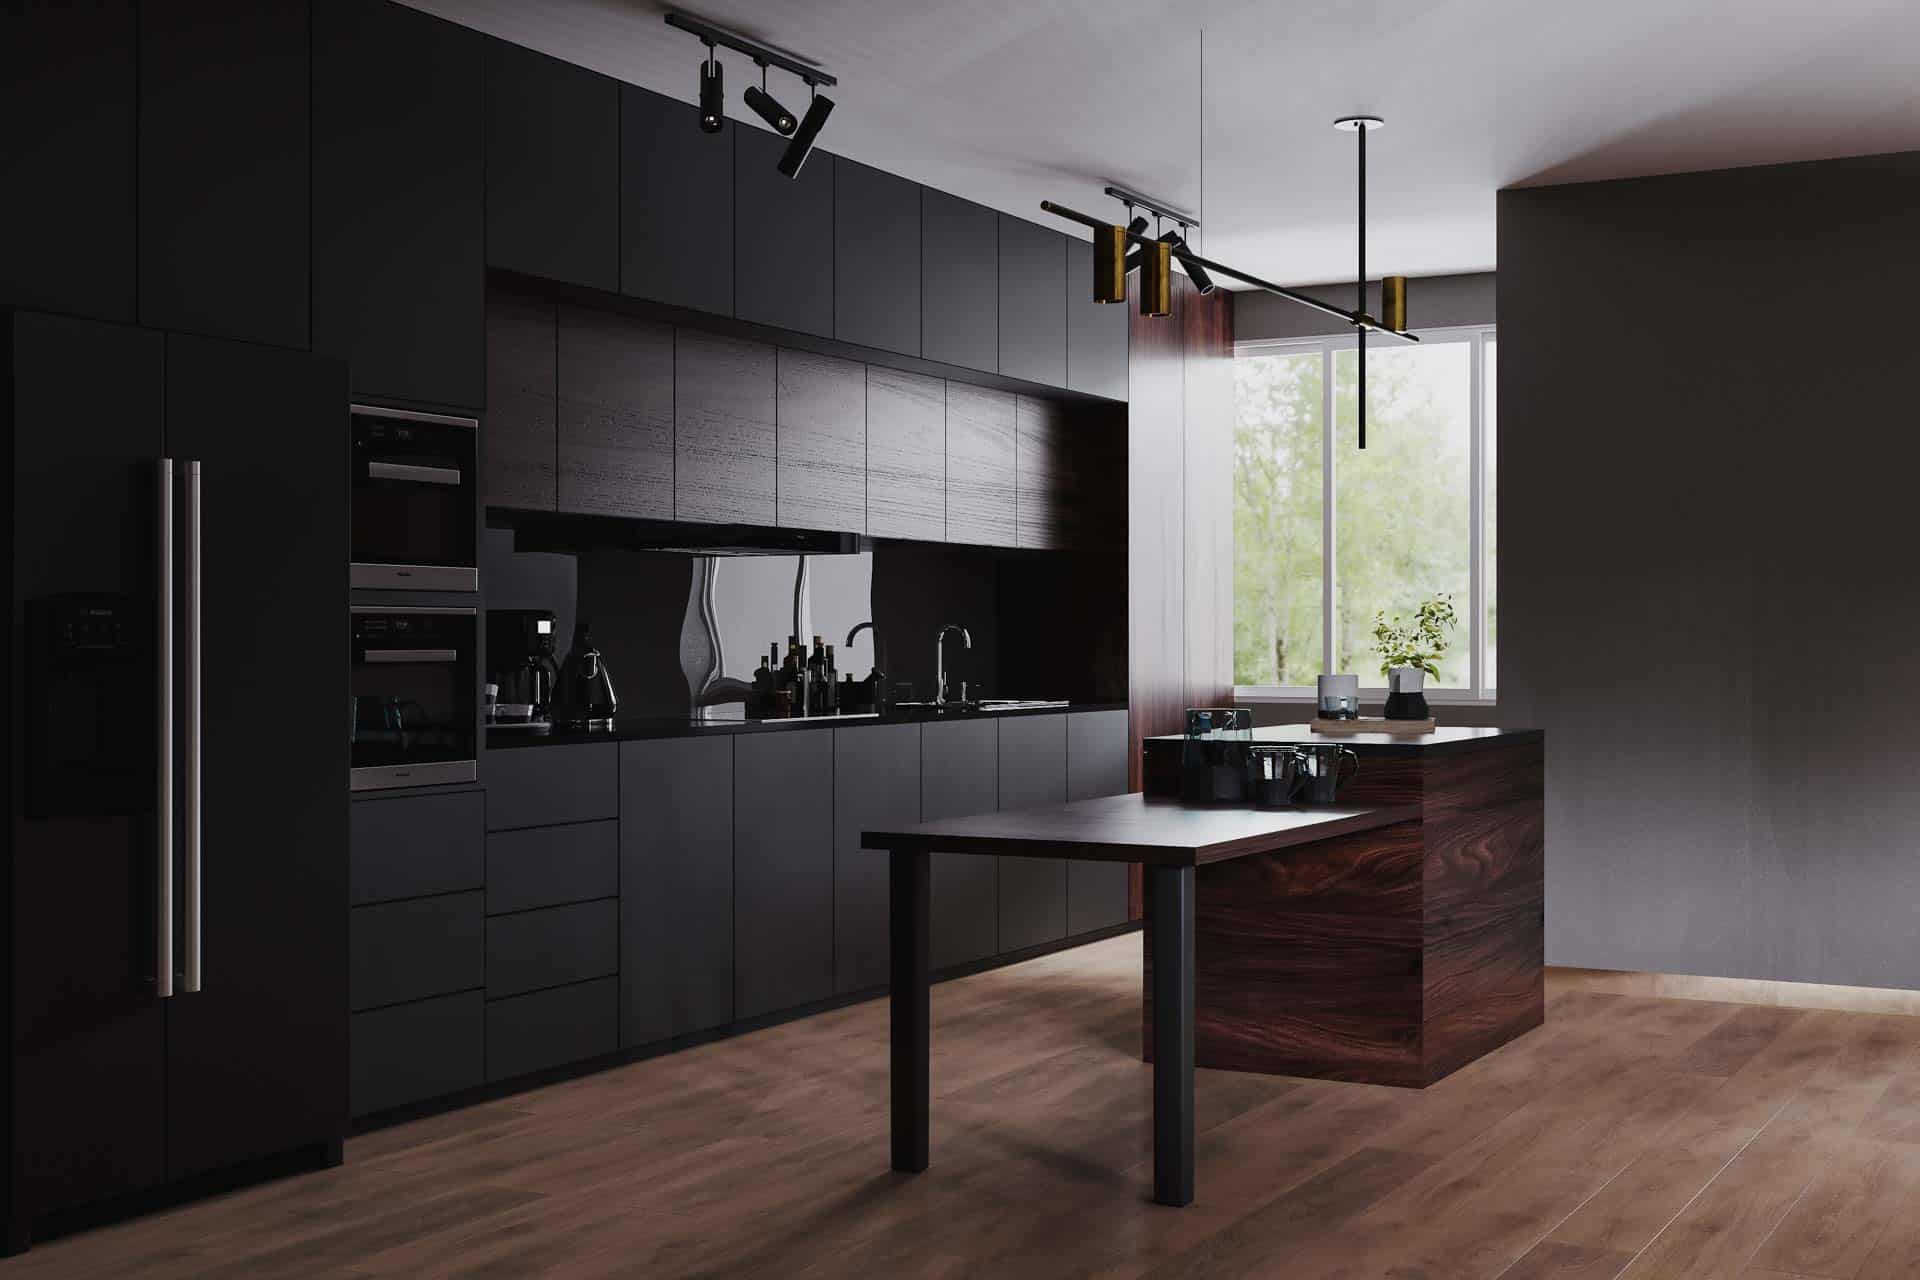 Kitchen Remodeling, Modern dark kitchen and dinning room interior with furniture and kitchenware, grey, black and dark wood kitchen interior background, luxury kitchen,